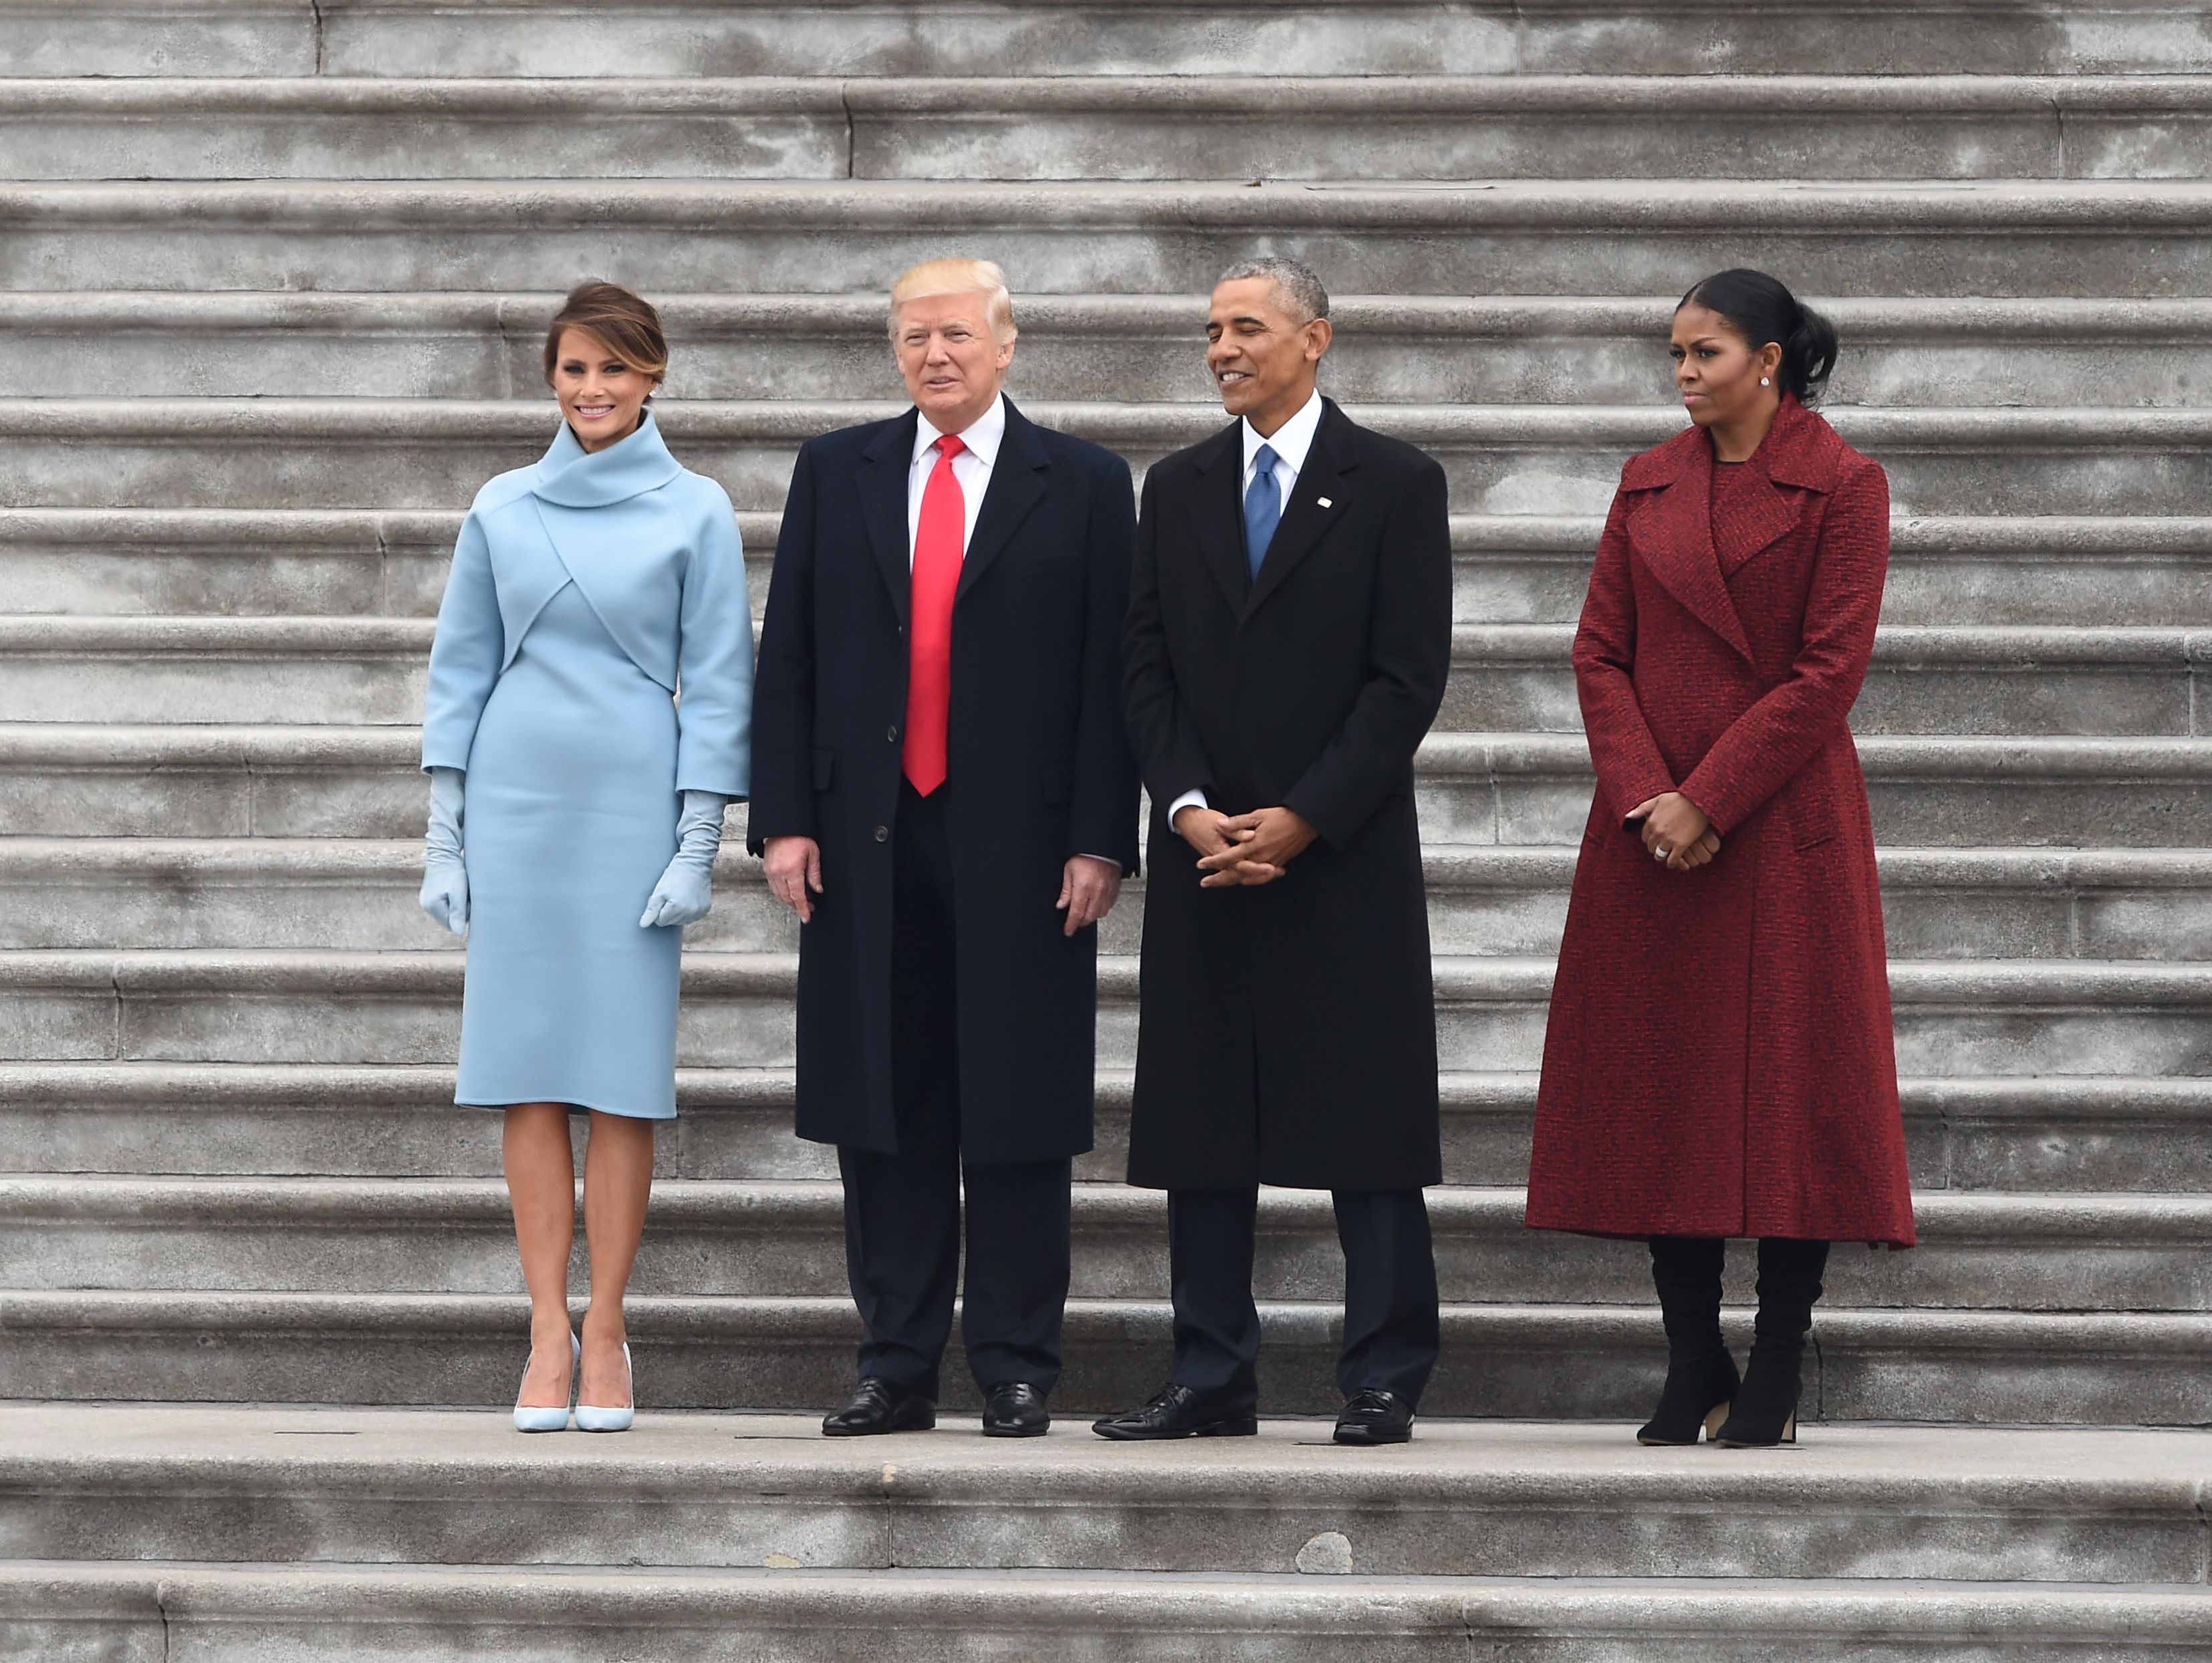 ترامب وأوباما وزوجتيهما فى صورة جماعية